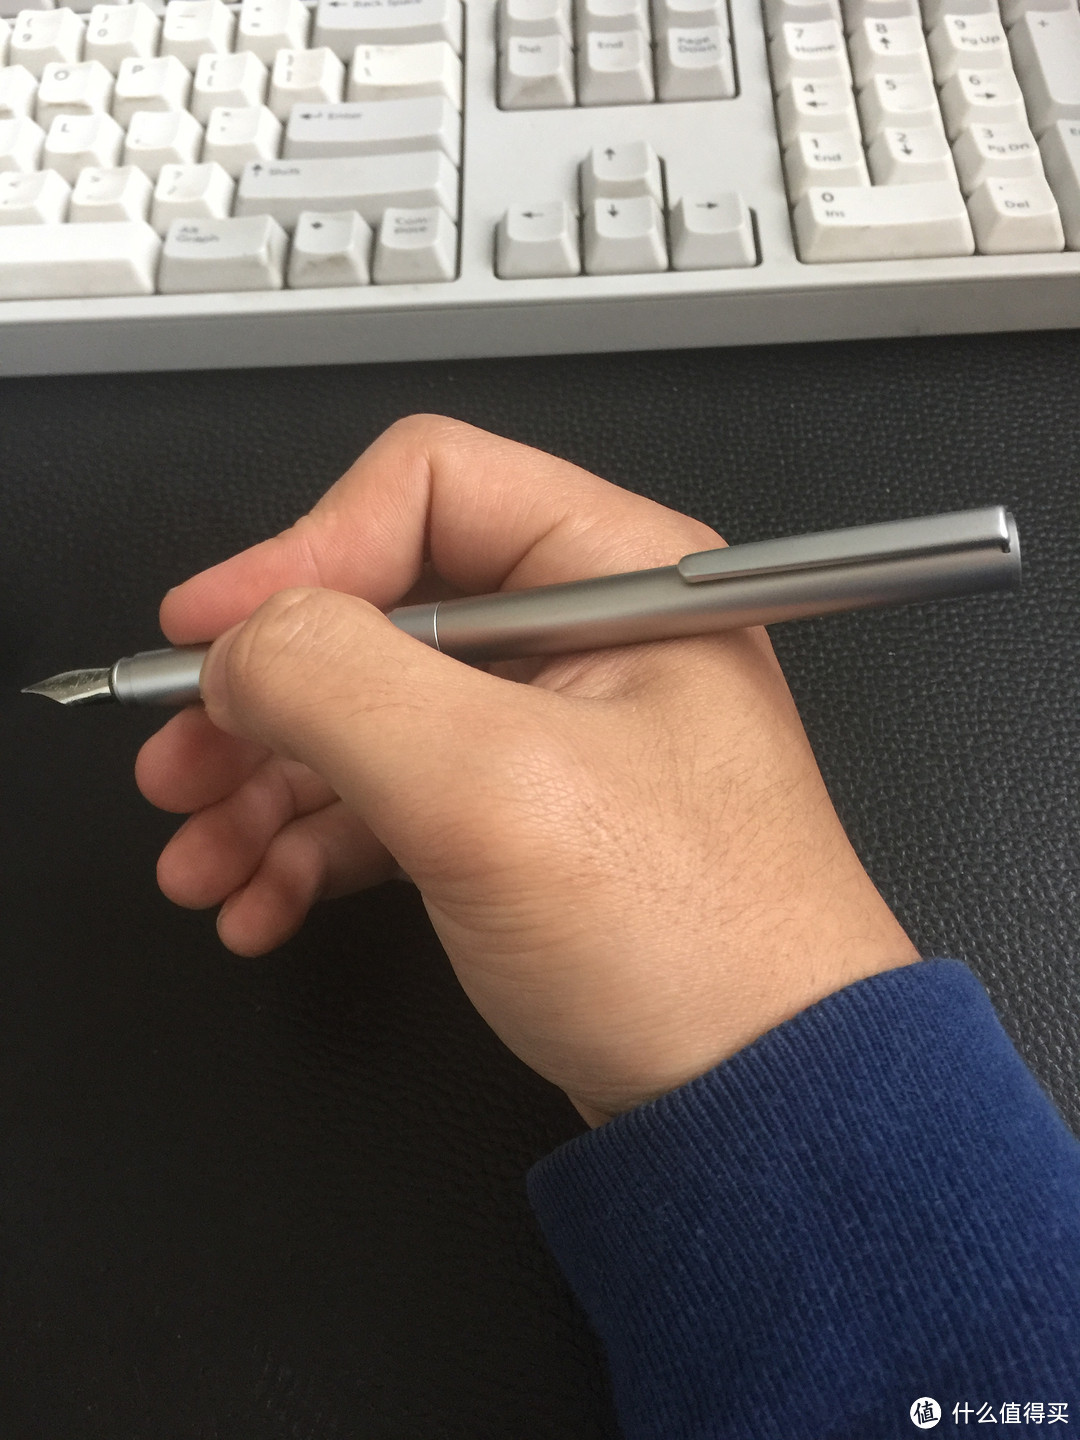 #原创新人# 一个８0屌丝败的装X笔：无印良品 铝制迷你自动铅笔  晒单